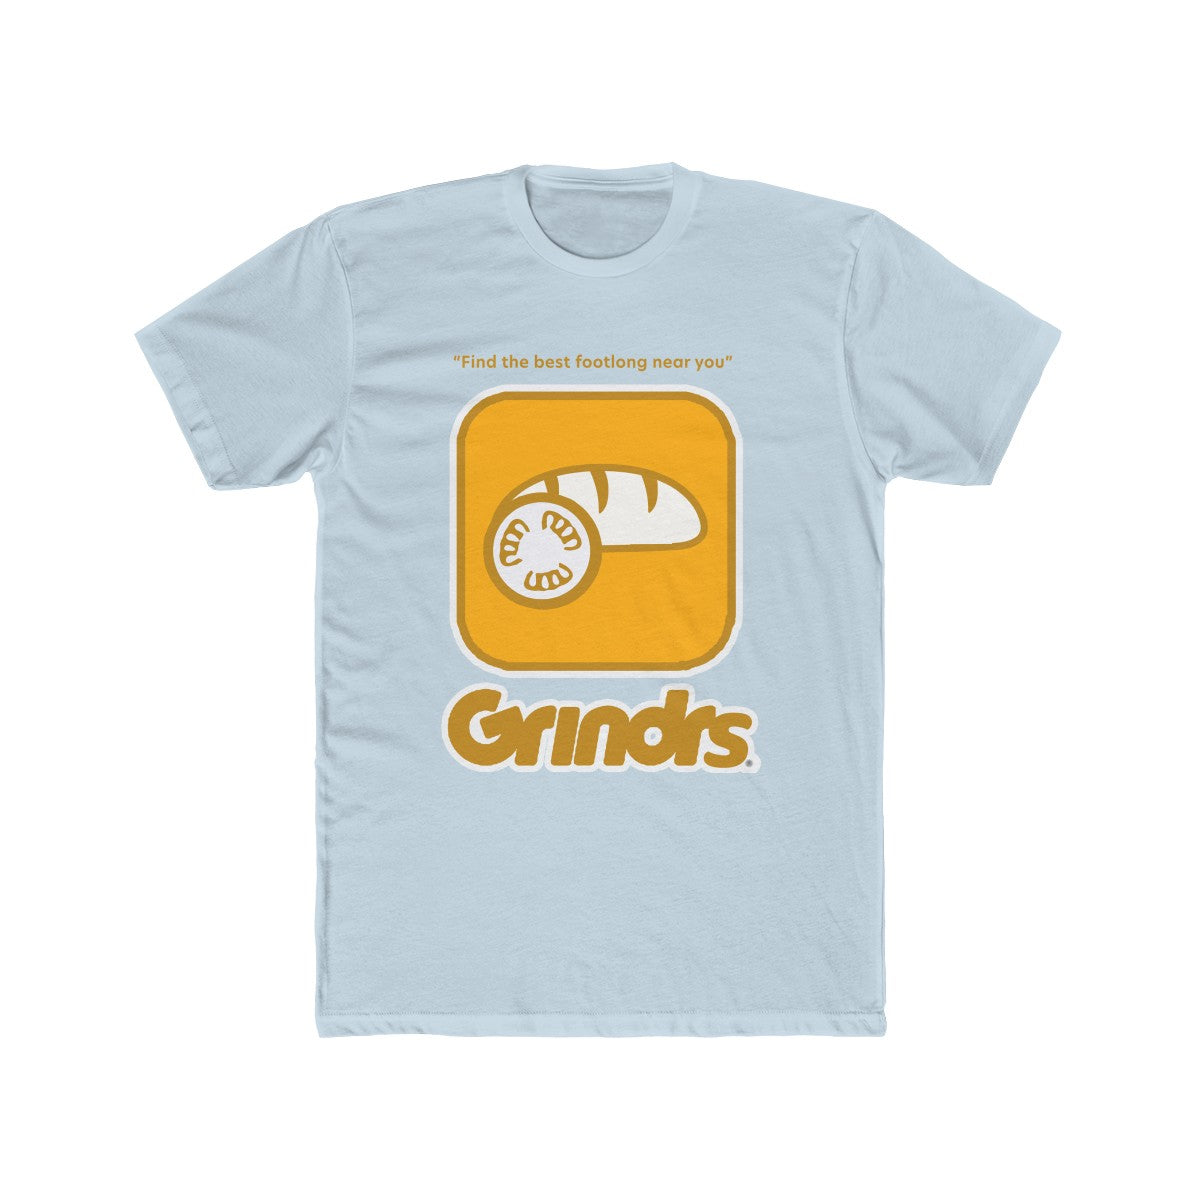 Grindr App Funny Parody Grinders Tee